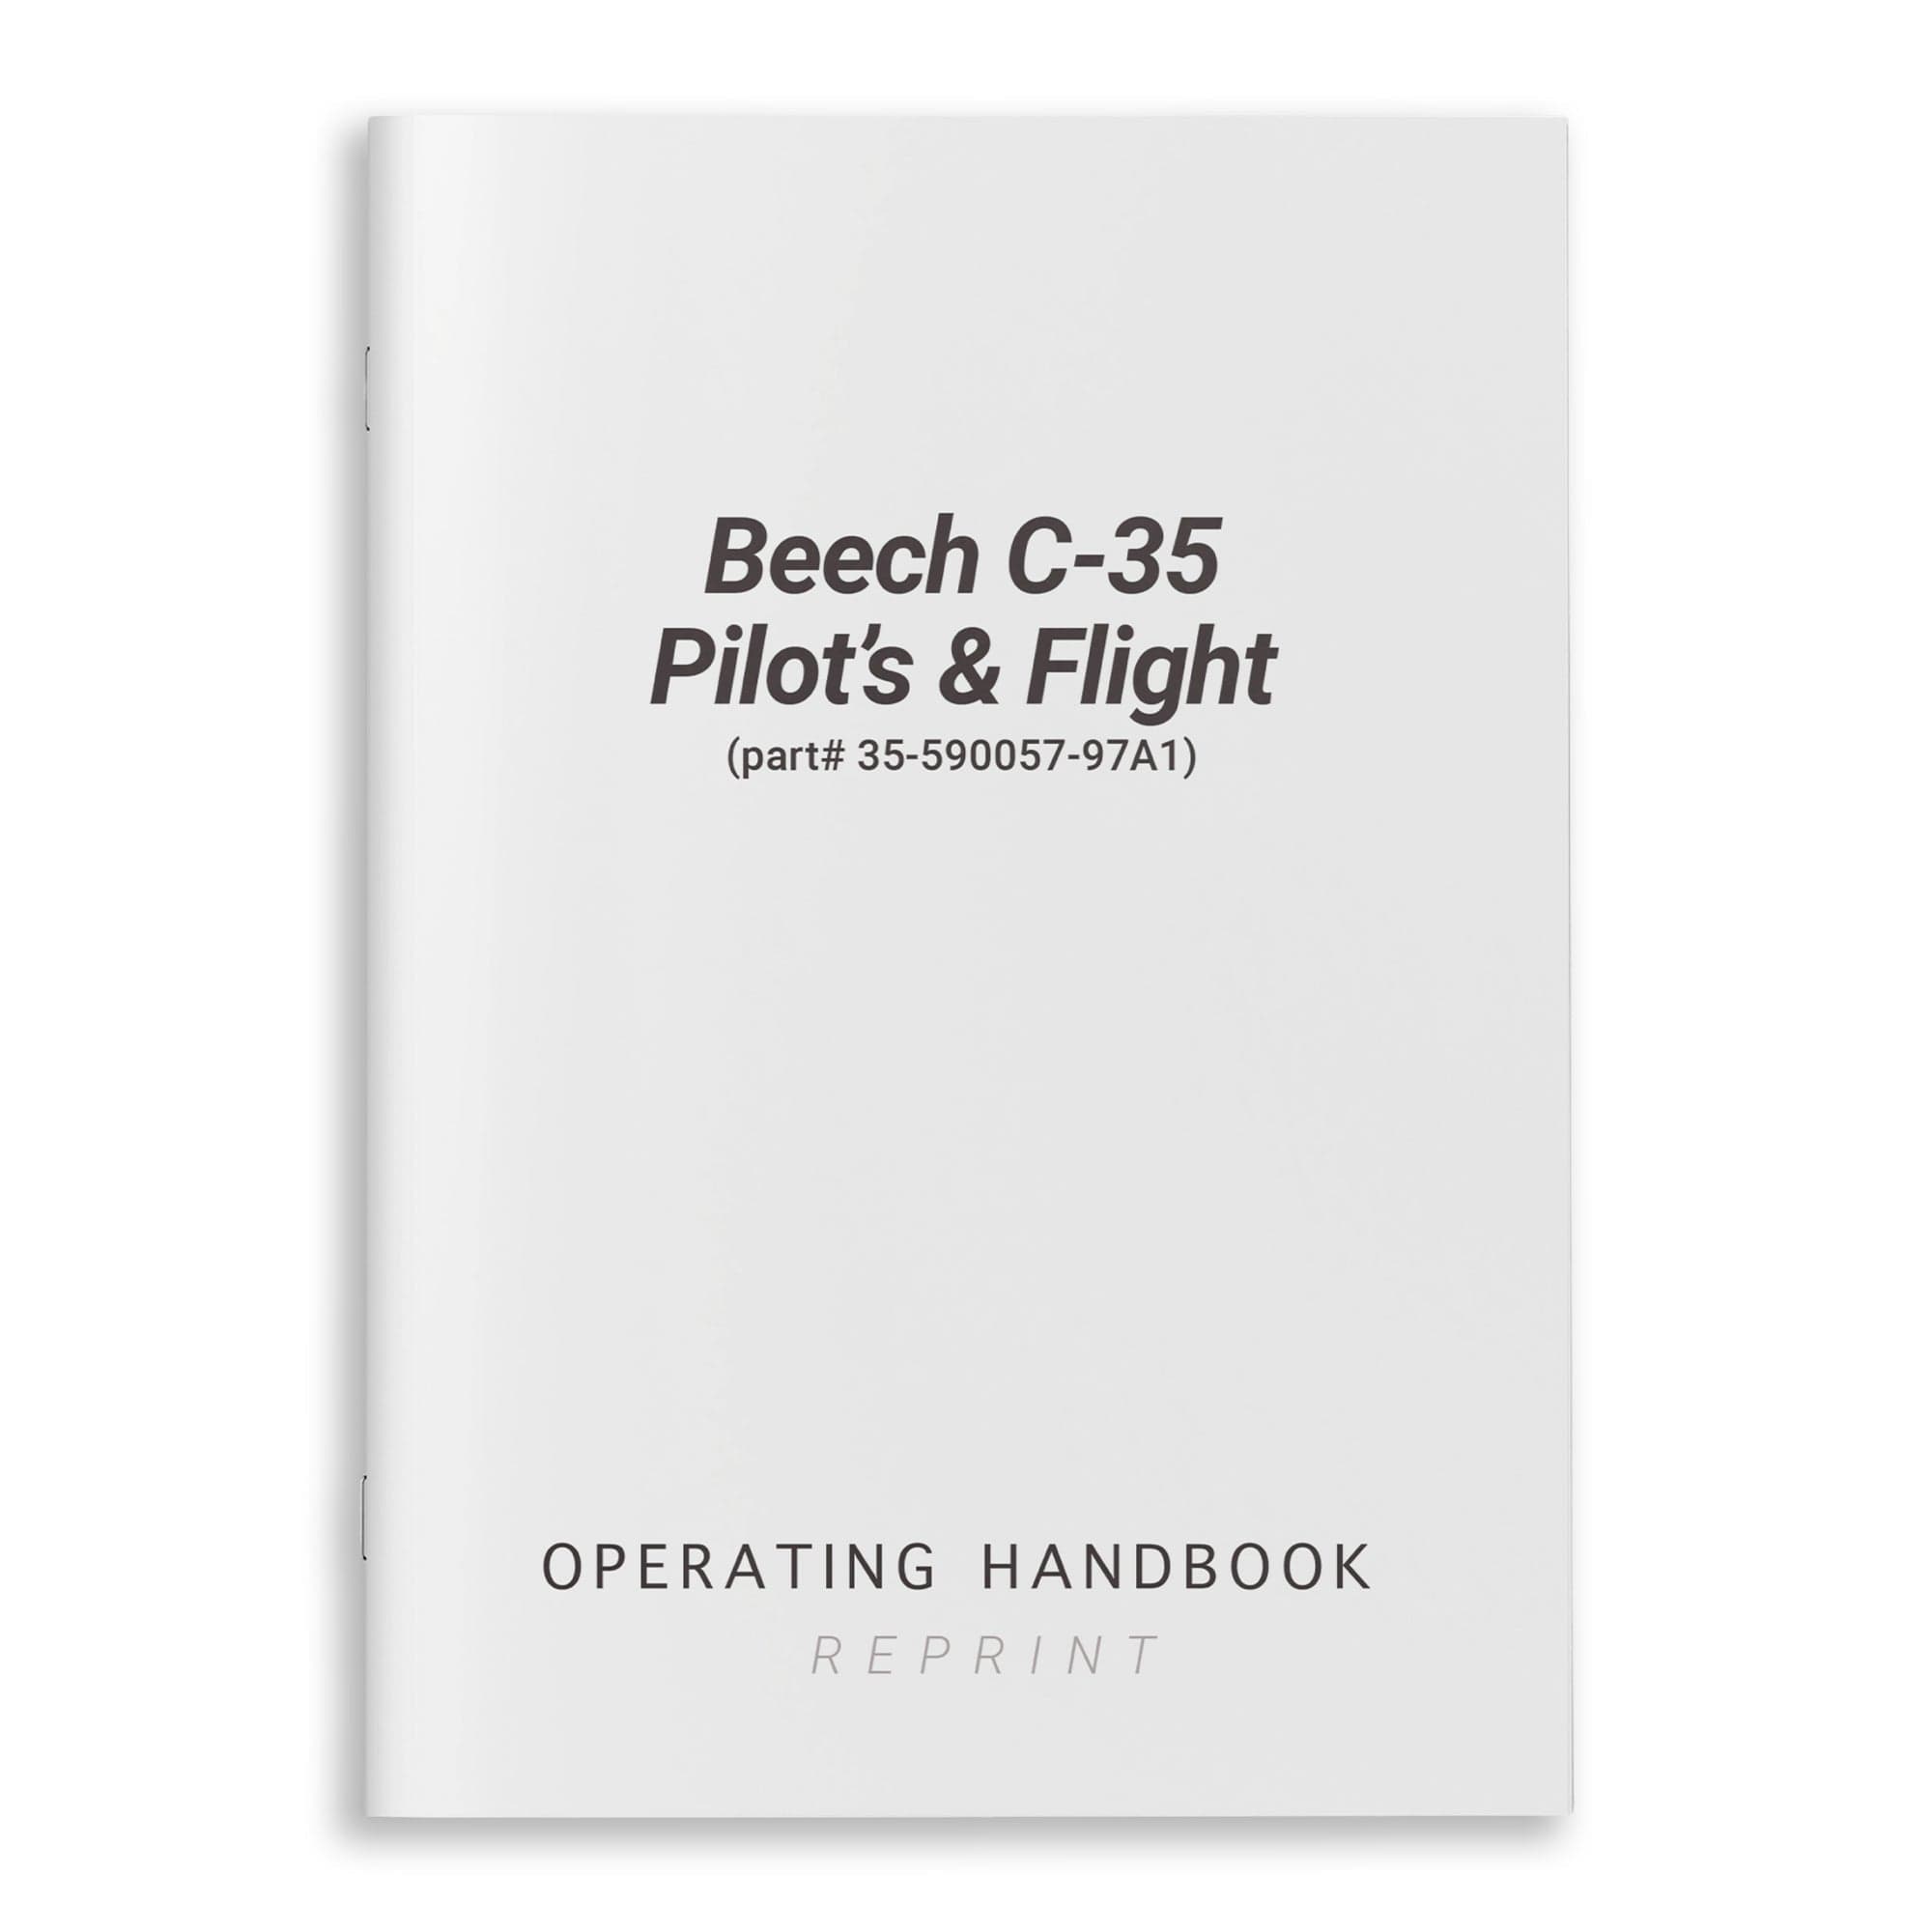 Beech C-35 Pilot's Operating Handbook & Flight (part# 35-590057-97A1)